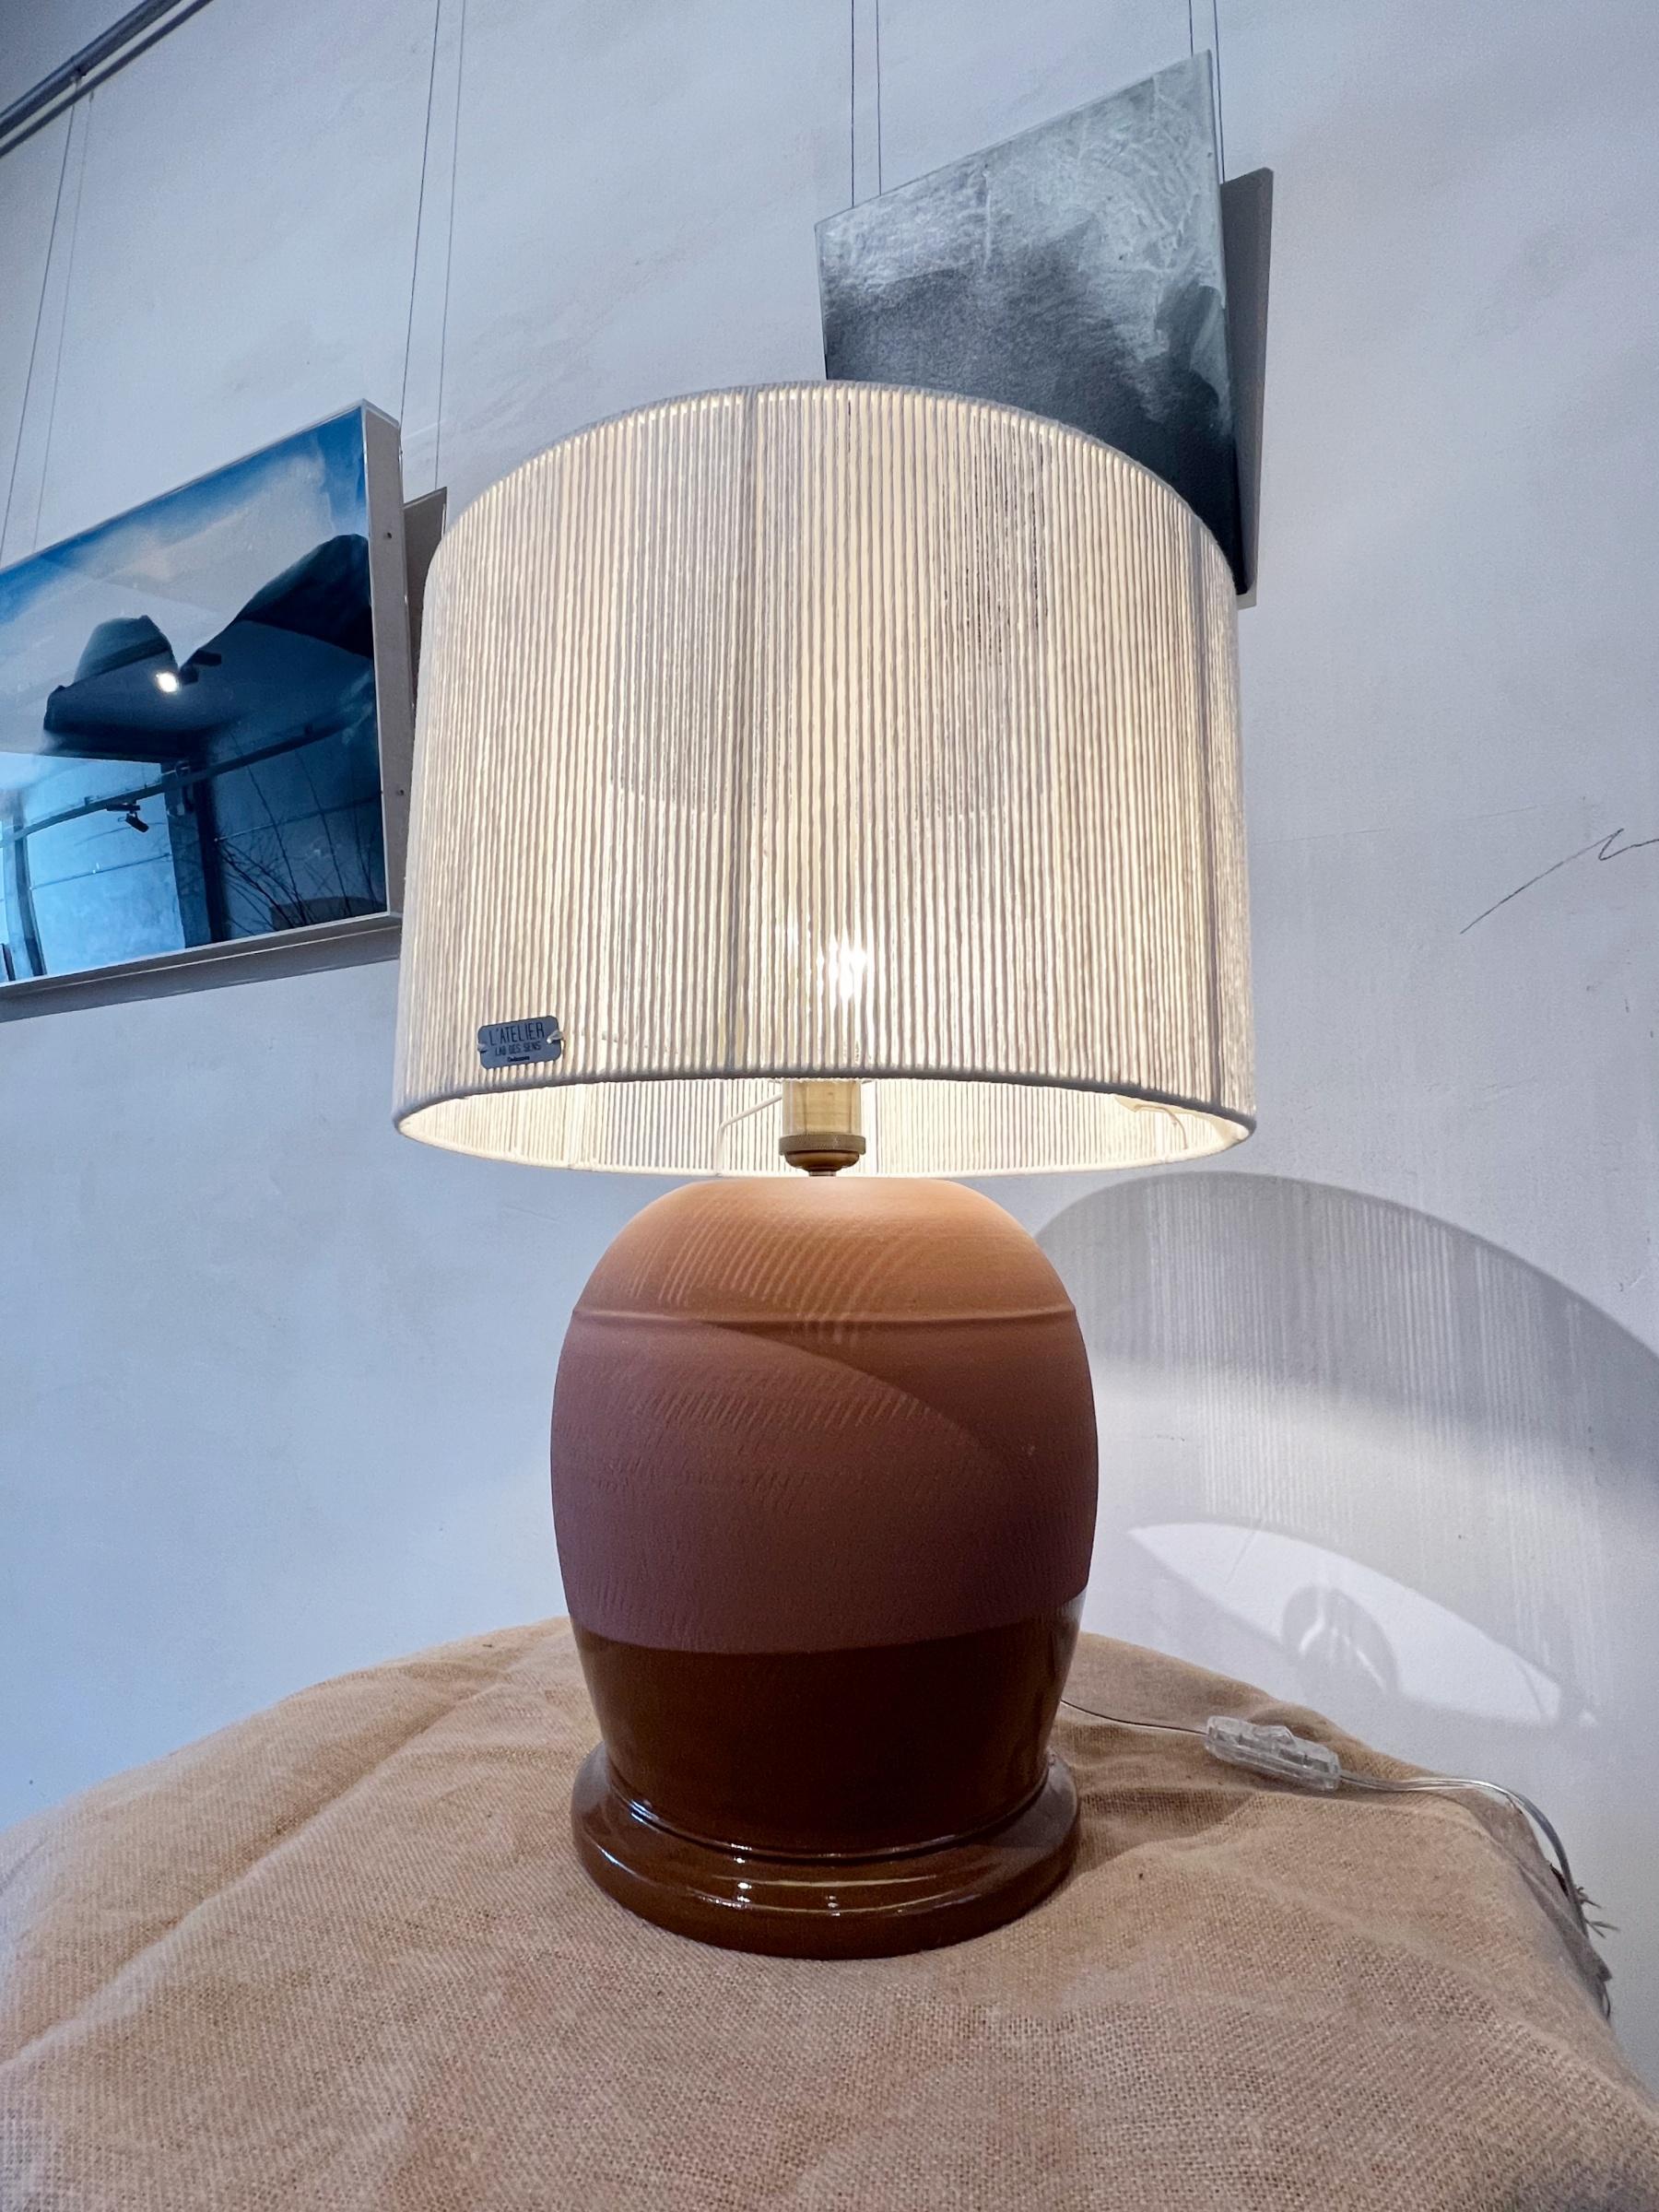 Lampe de table en céramique faite à la main, conçue par l'artisan Rulo et l'artiste Manolo Eirin. Toutes les pièces sont signées et numérotées, et accompagnées de leur certificat. 

Les dimensions de la lampe sans abat-jour sont 37 cm (hauteur) x 25